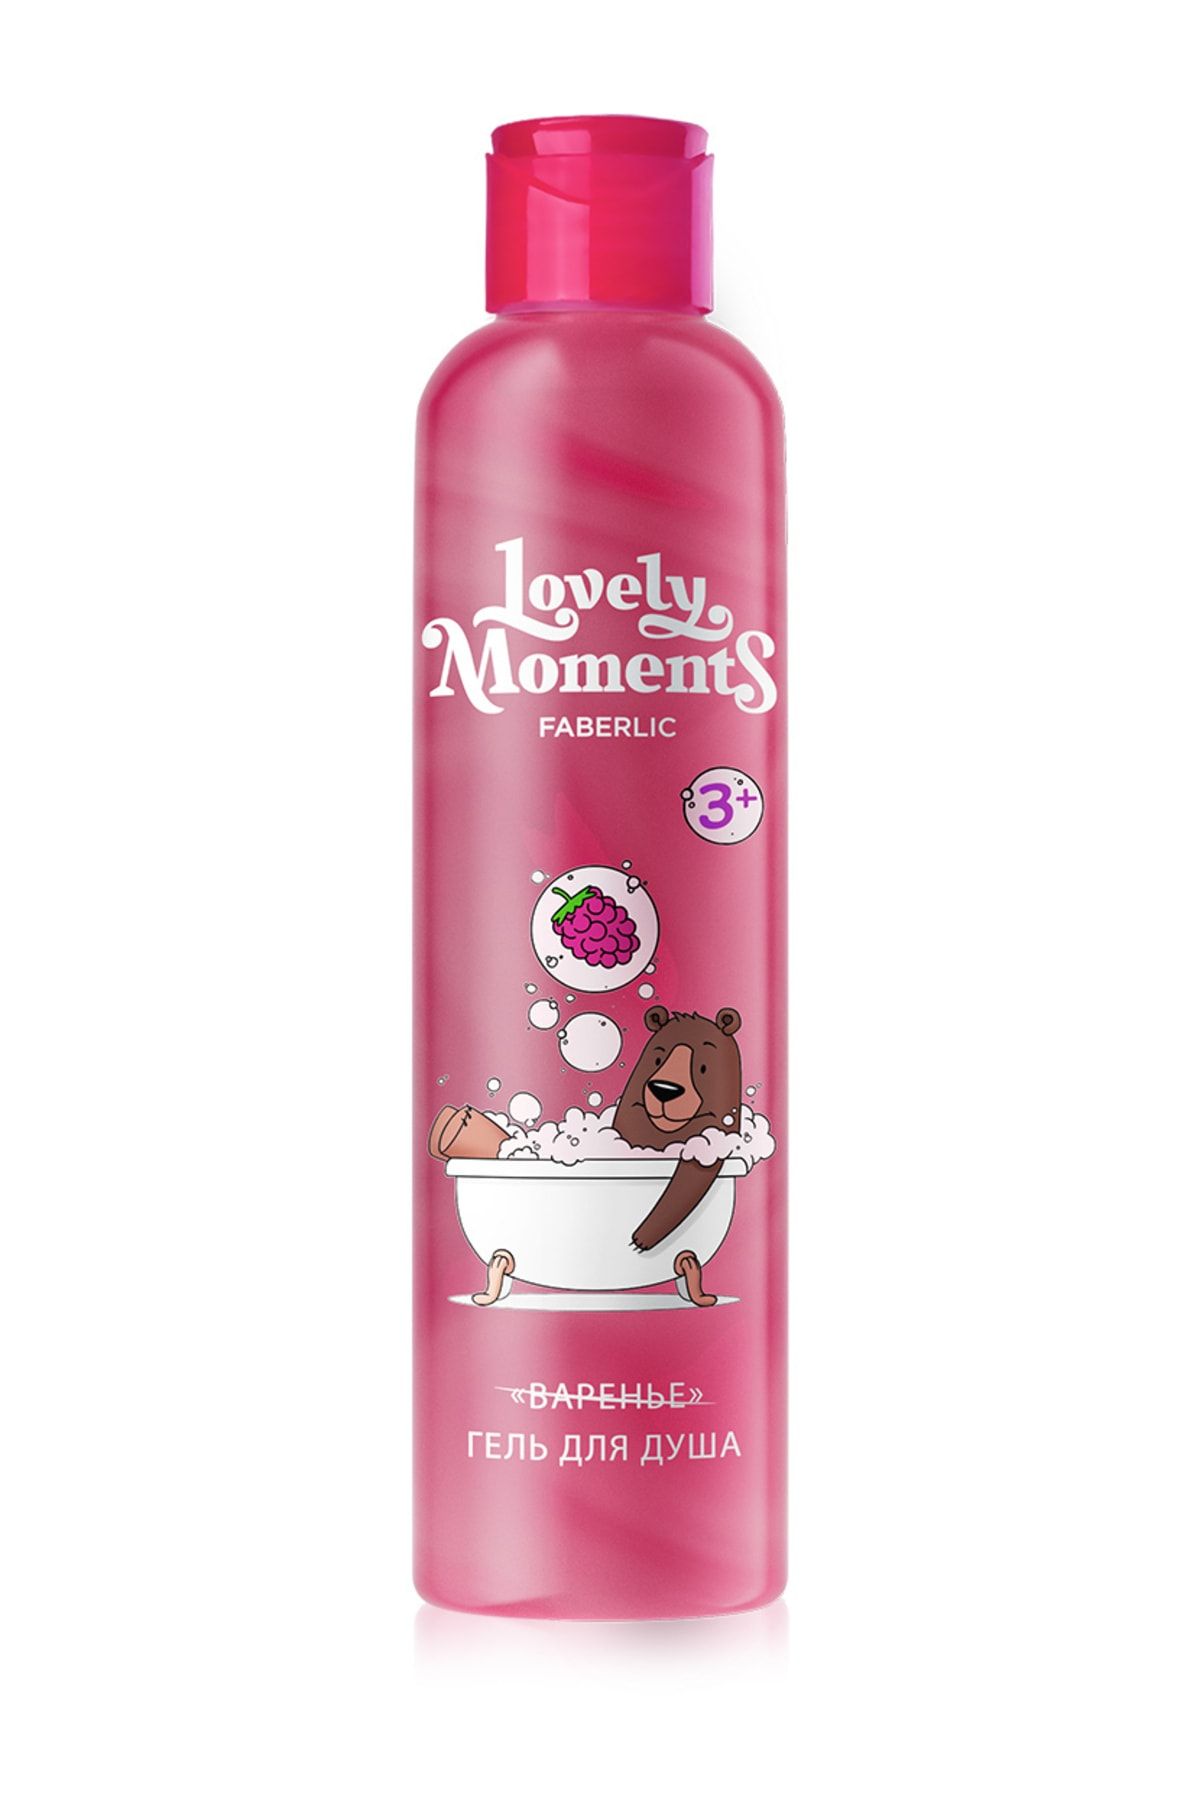 Faberlic Lovely Moments Serisi Çocuklar Için Duş Jeli «ahududulu Ayıcık»